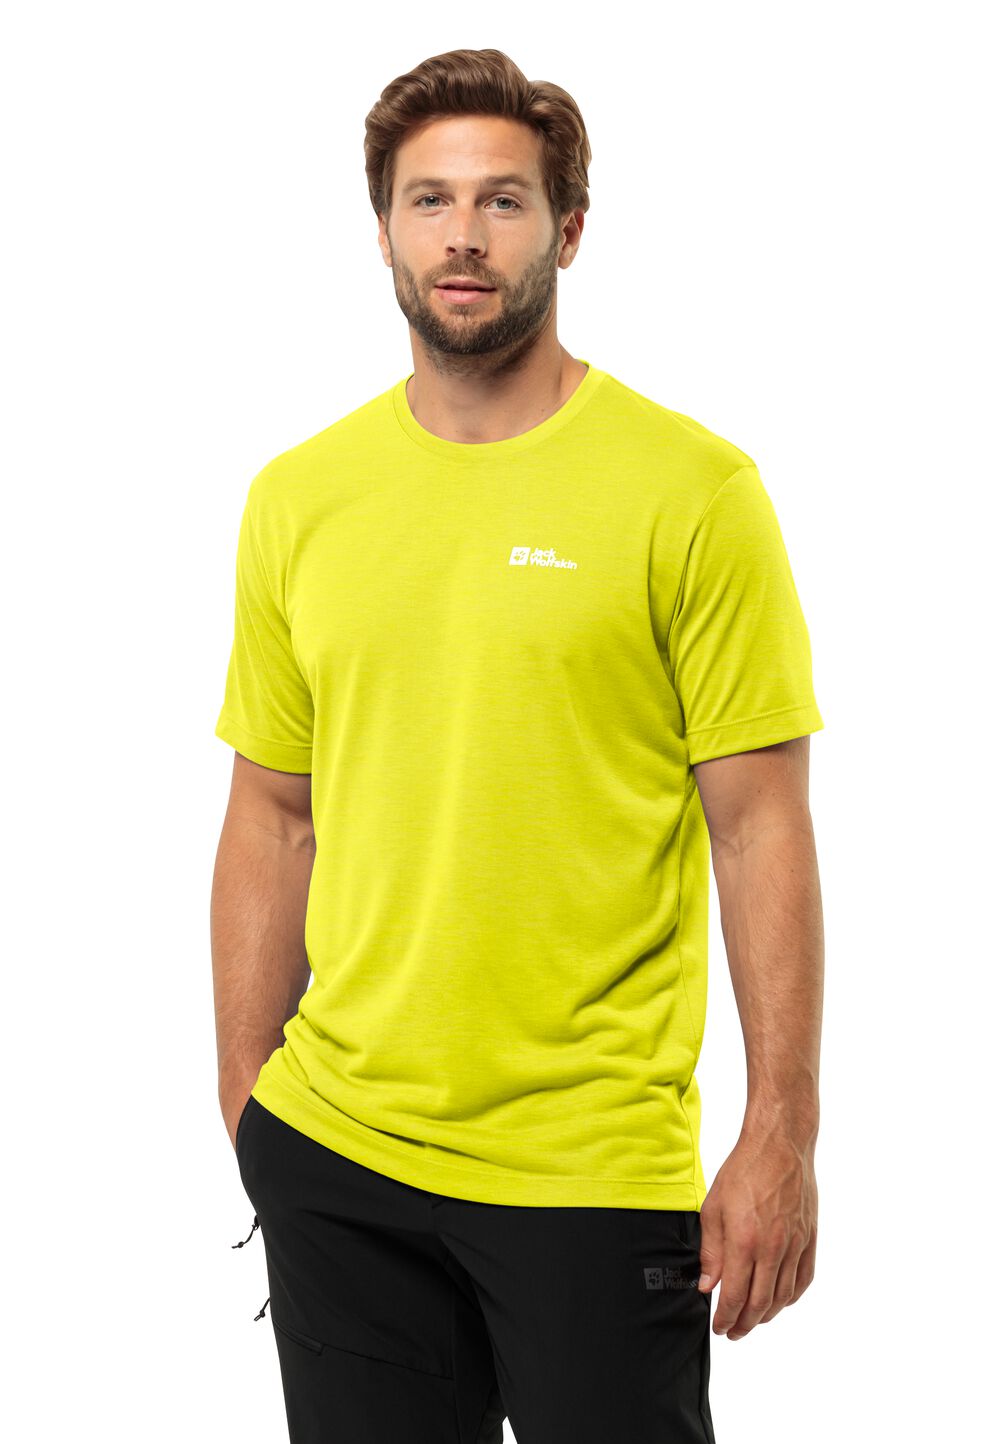 Jack Wolfskin Vonnan S S T-Shirt Men Functioneel shirt Heren 3XL oranje firefly